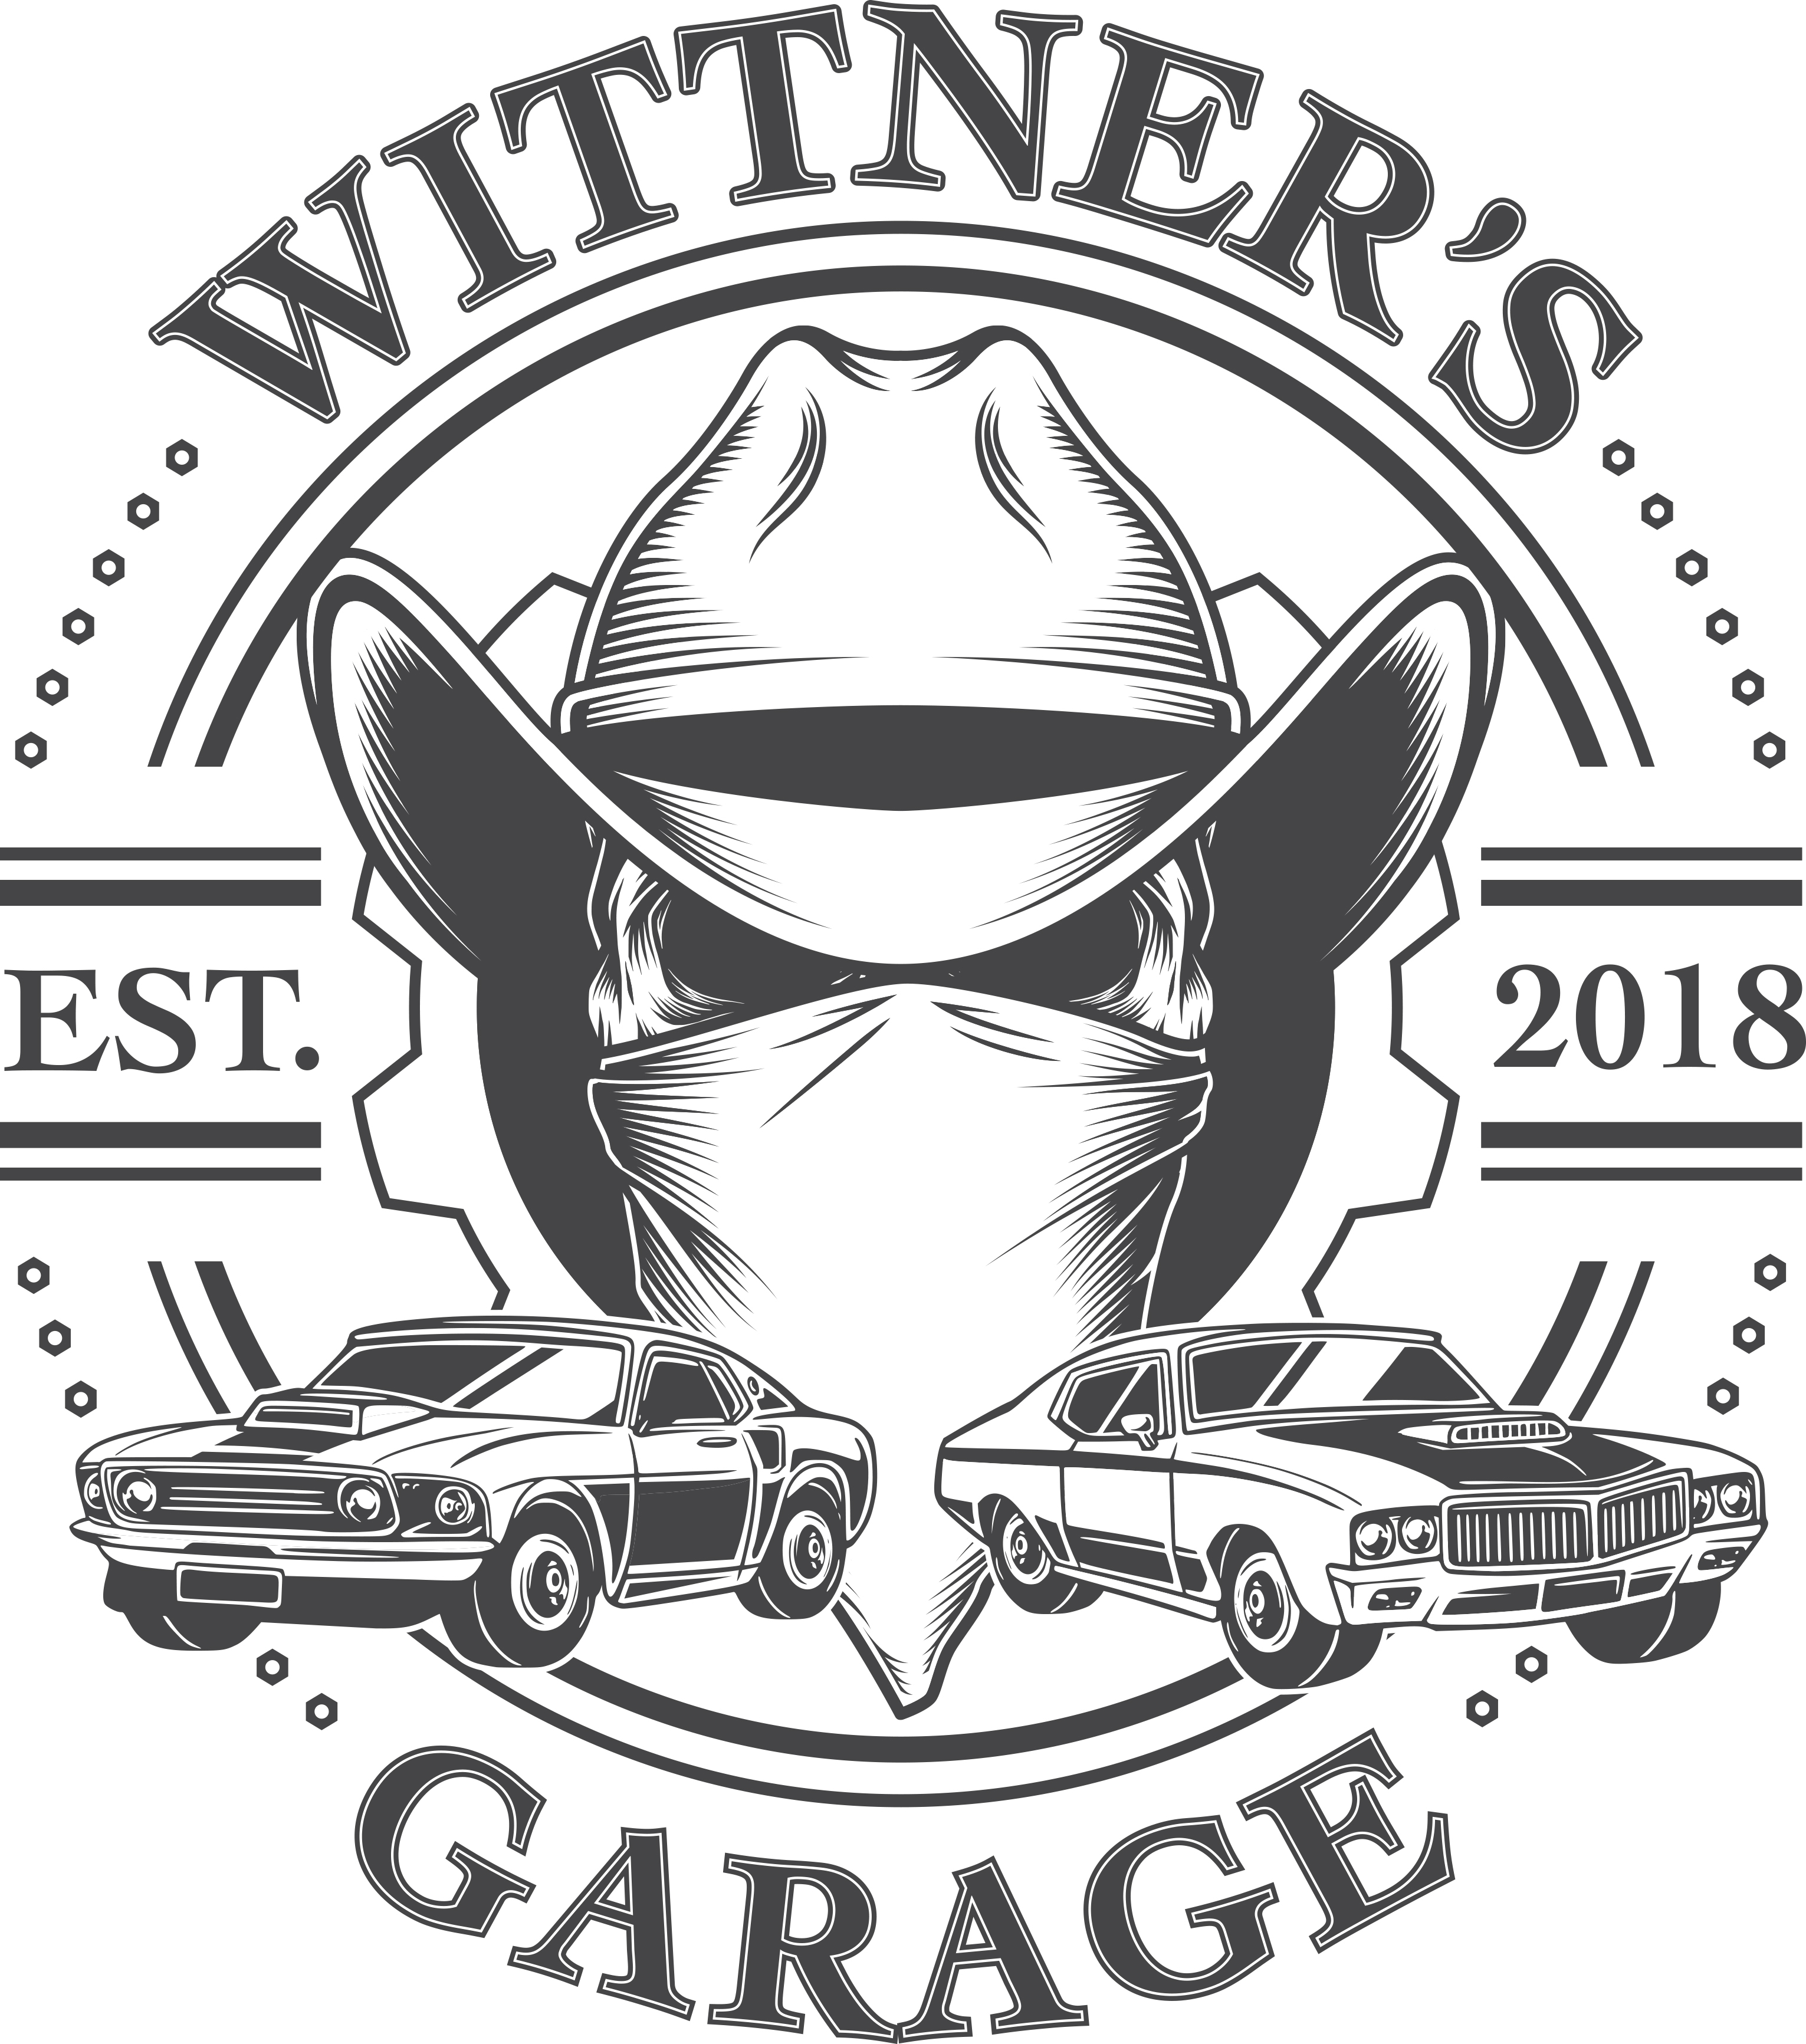 Wittners Garage Established 2018